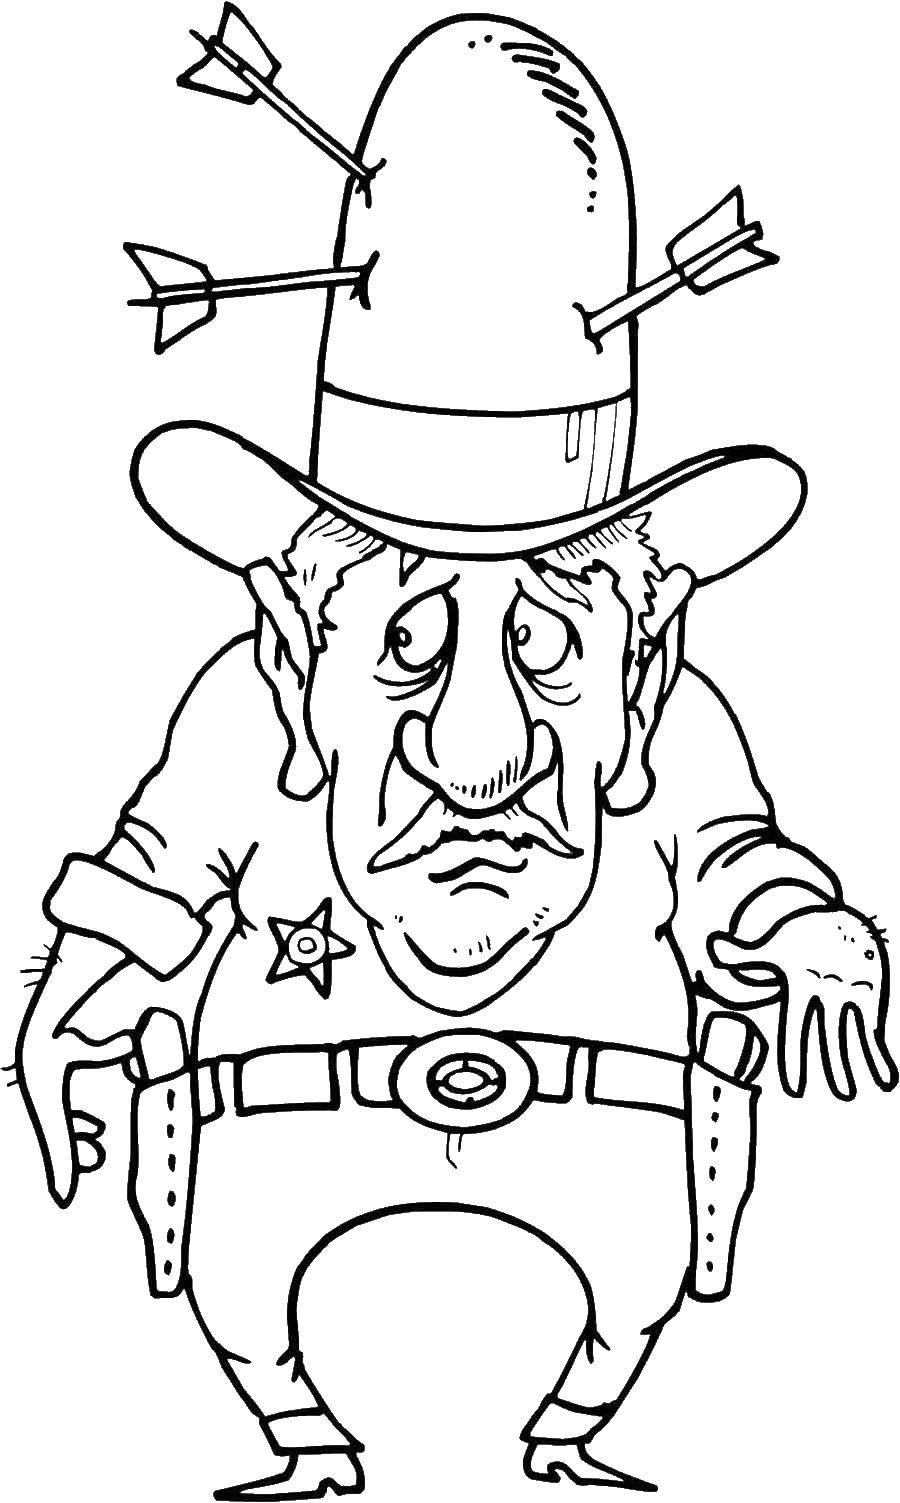 Розмальовки  Шериф з капелюхом. Завантажити розмальовку шериф, значок, капелюх.  Роздрукувати ,розмальовки,